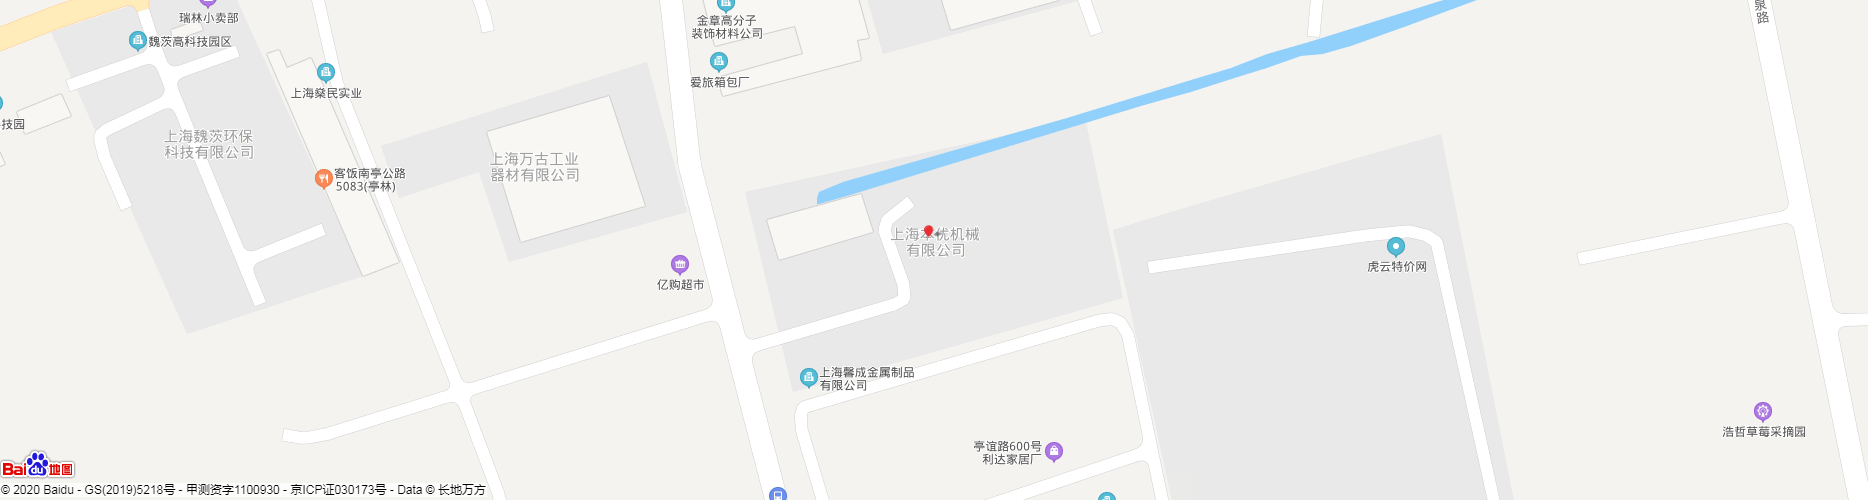 上海.png